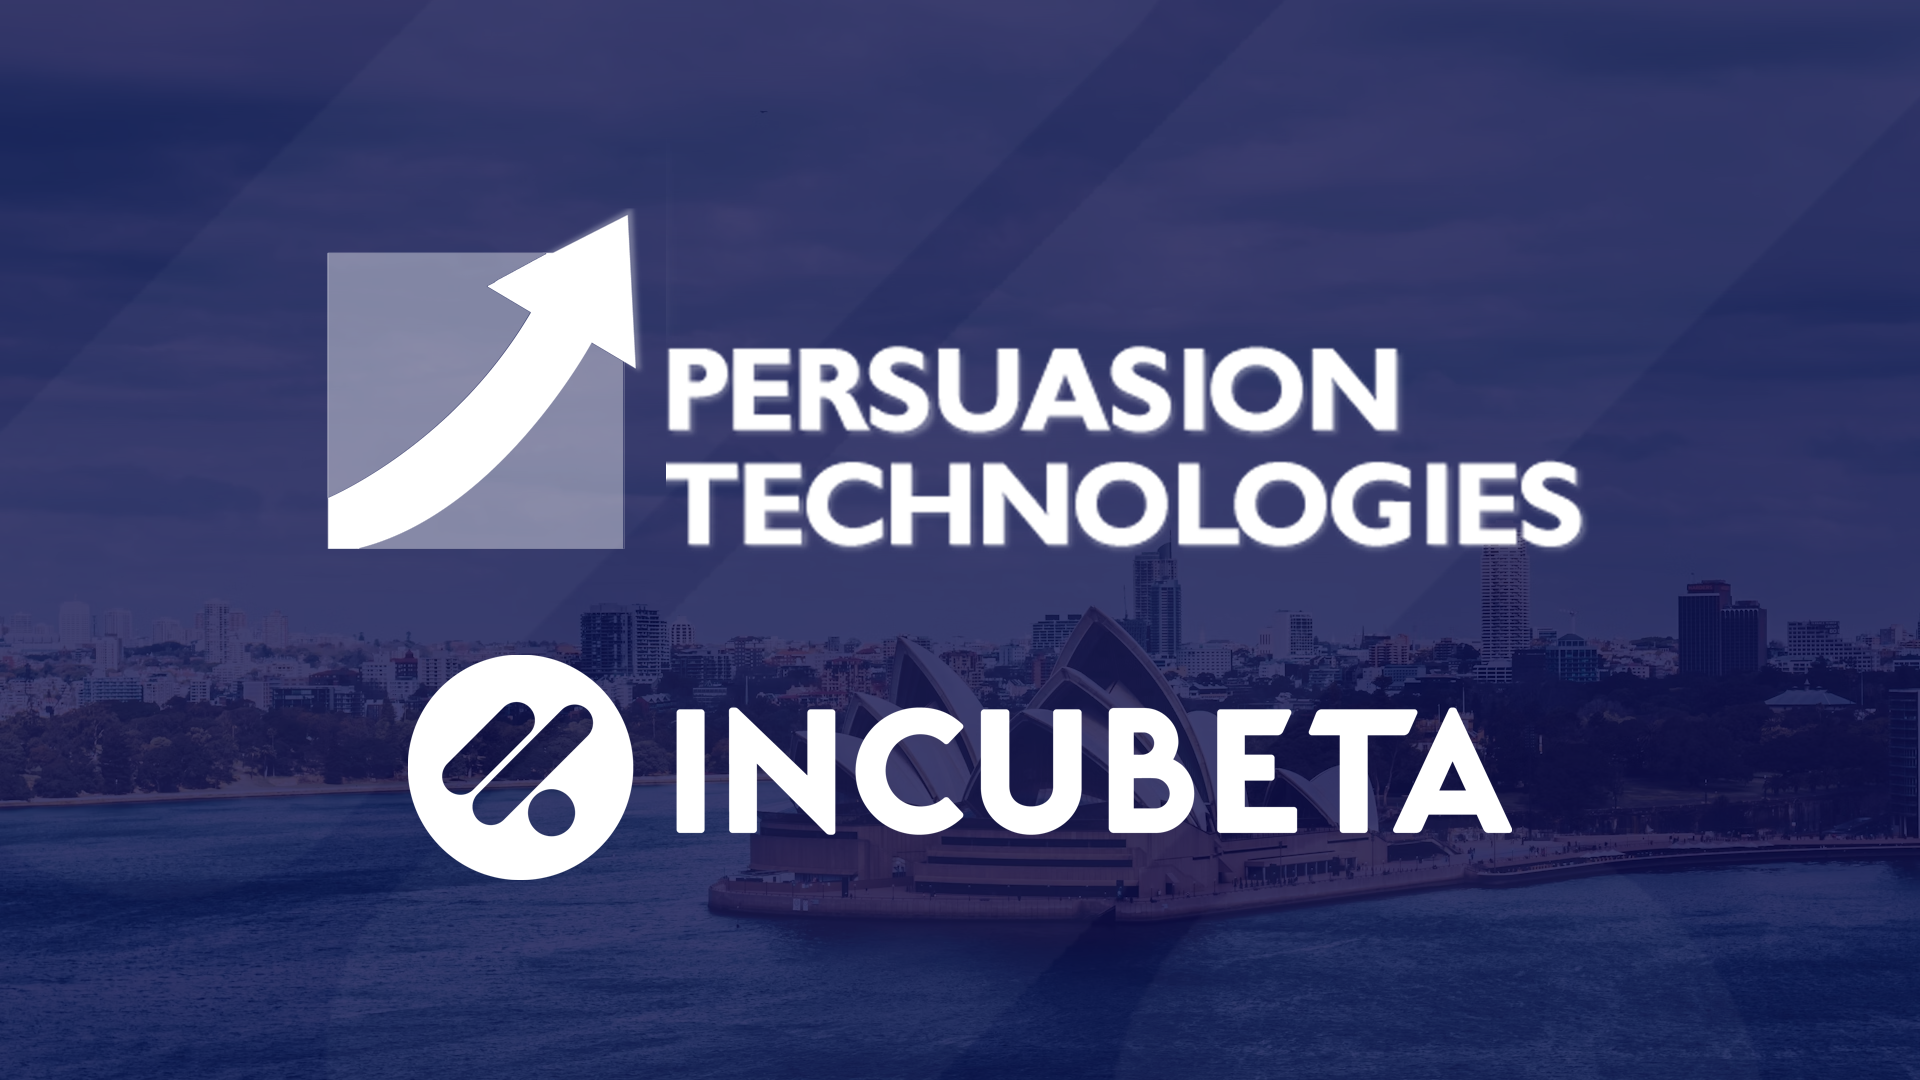 persuasion_technologies_incubeta
